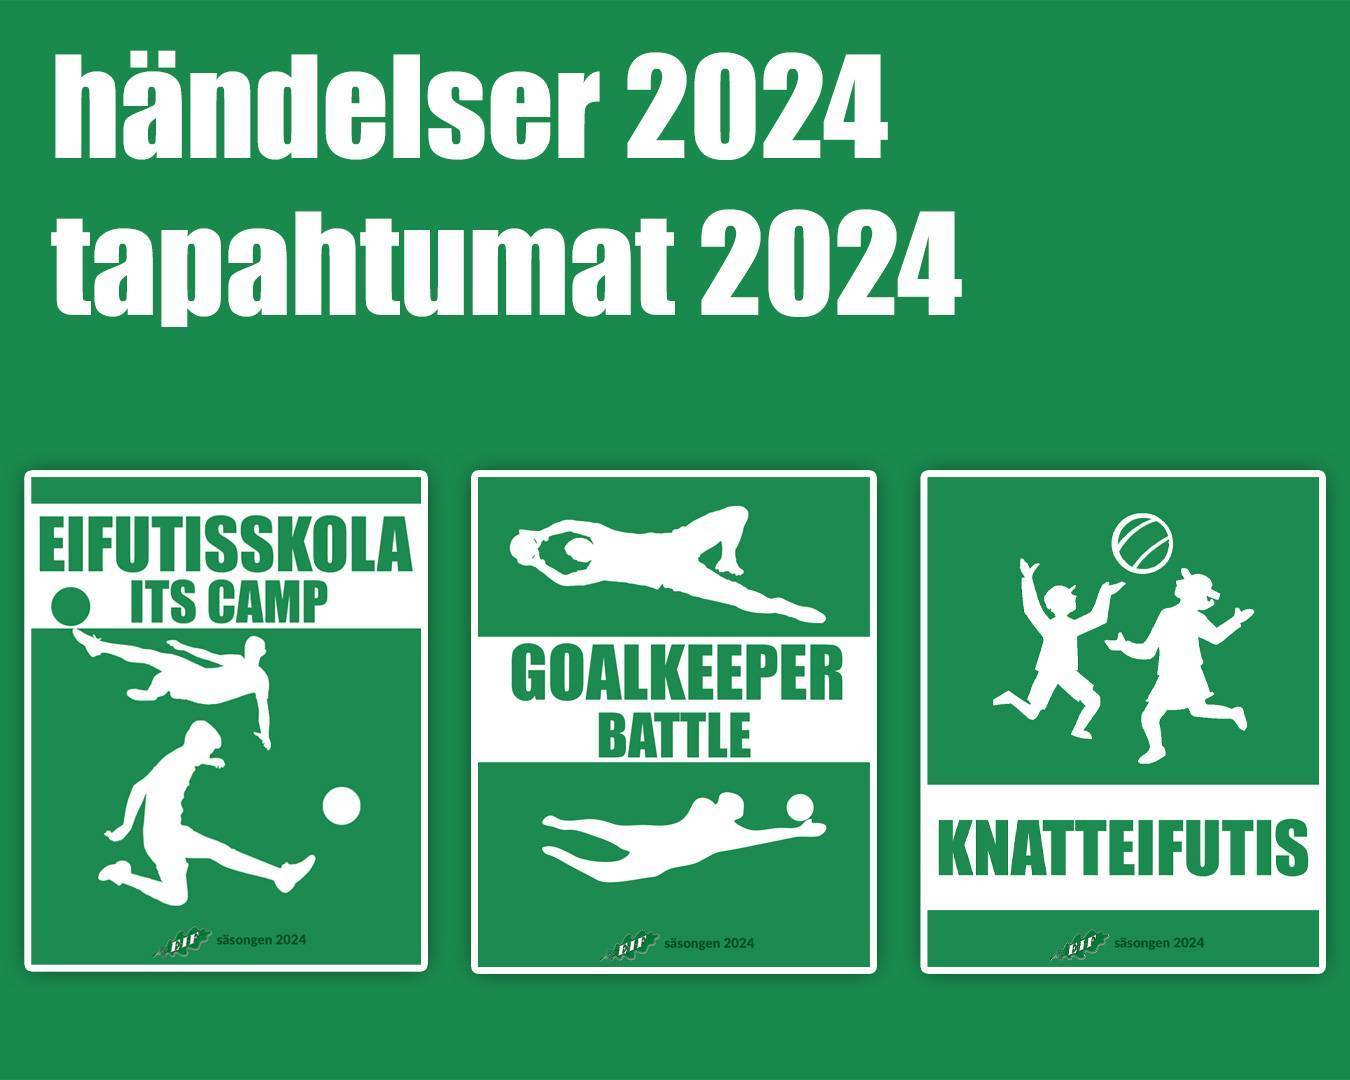 Evenemang 2024 - Anmäl Dig med nu! Tapahtumat 2024 - Ilmoittaudu mukaan nyt!